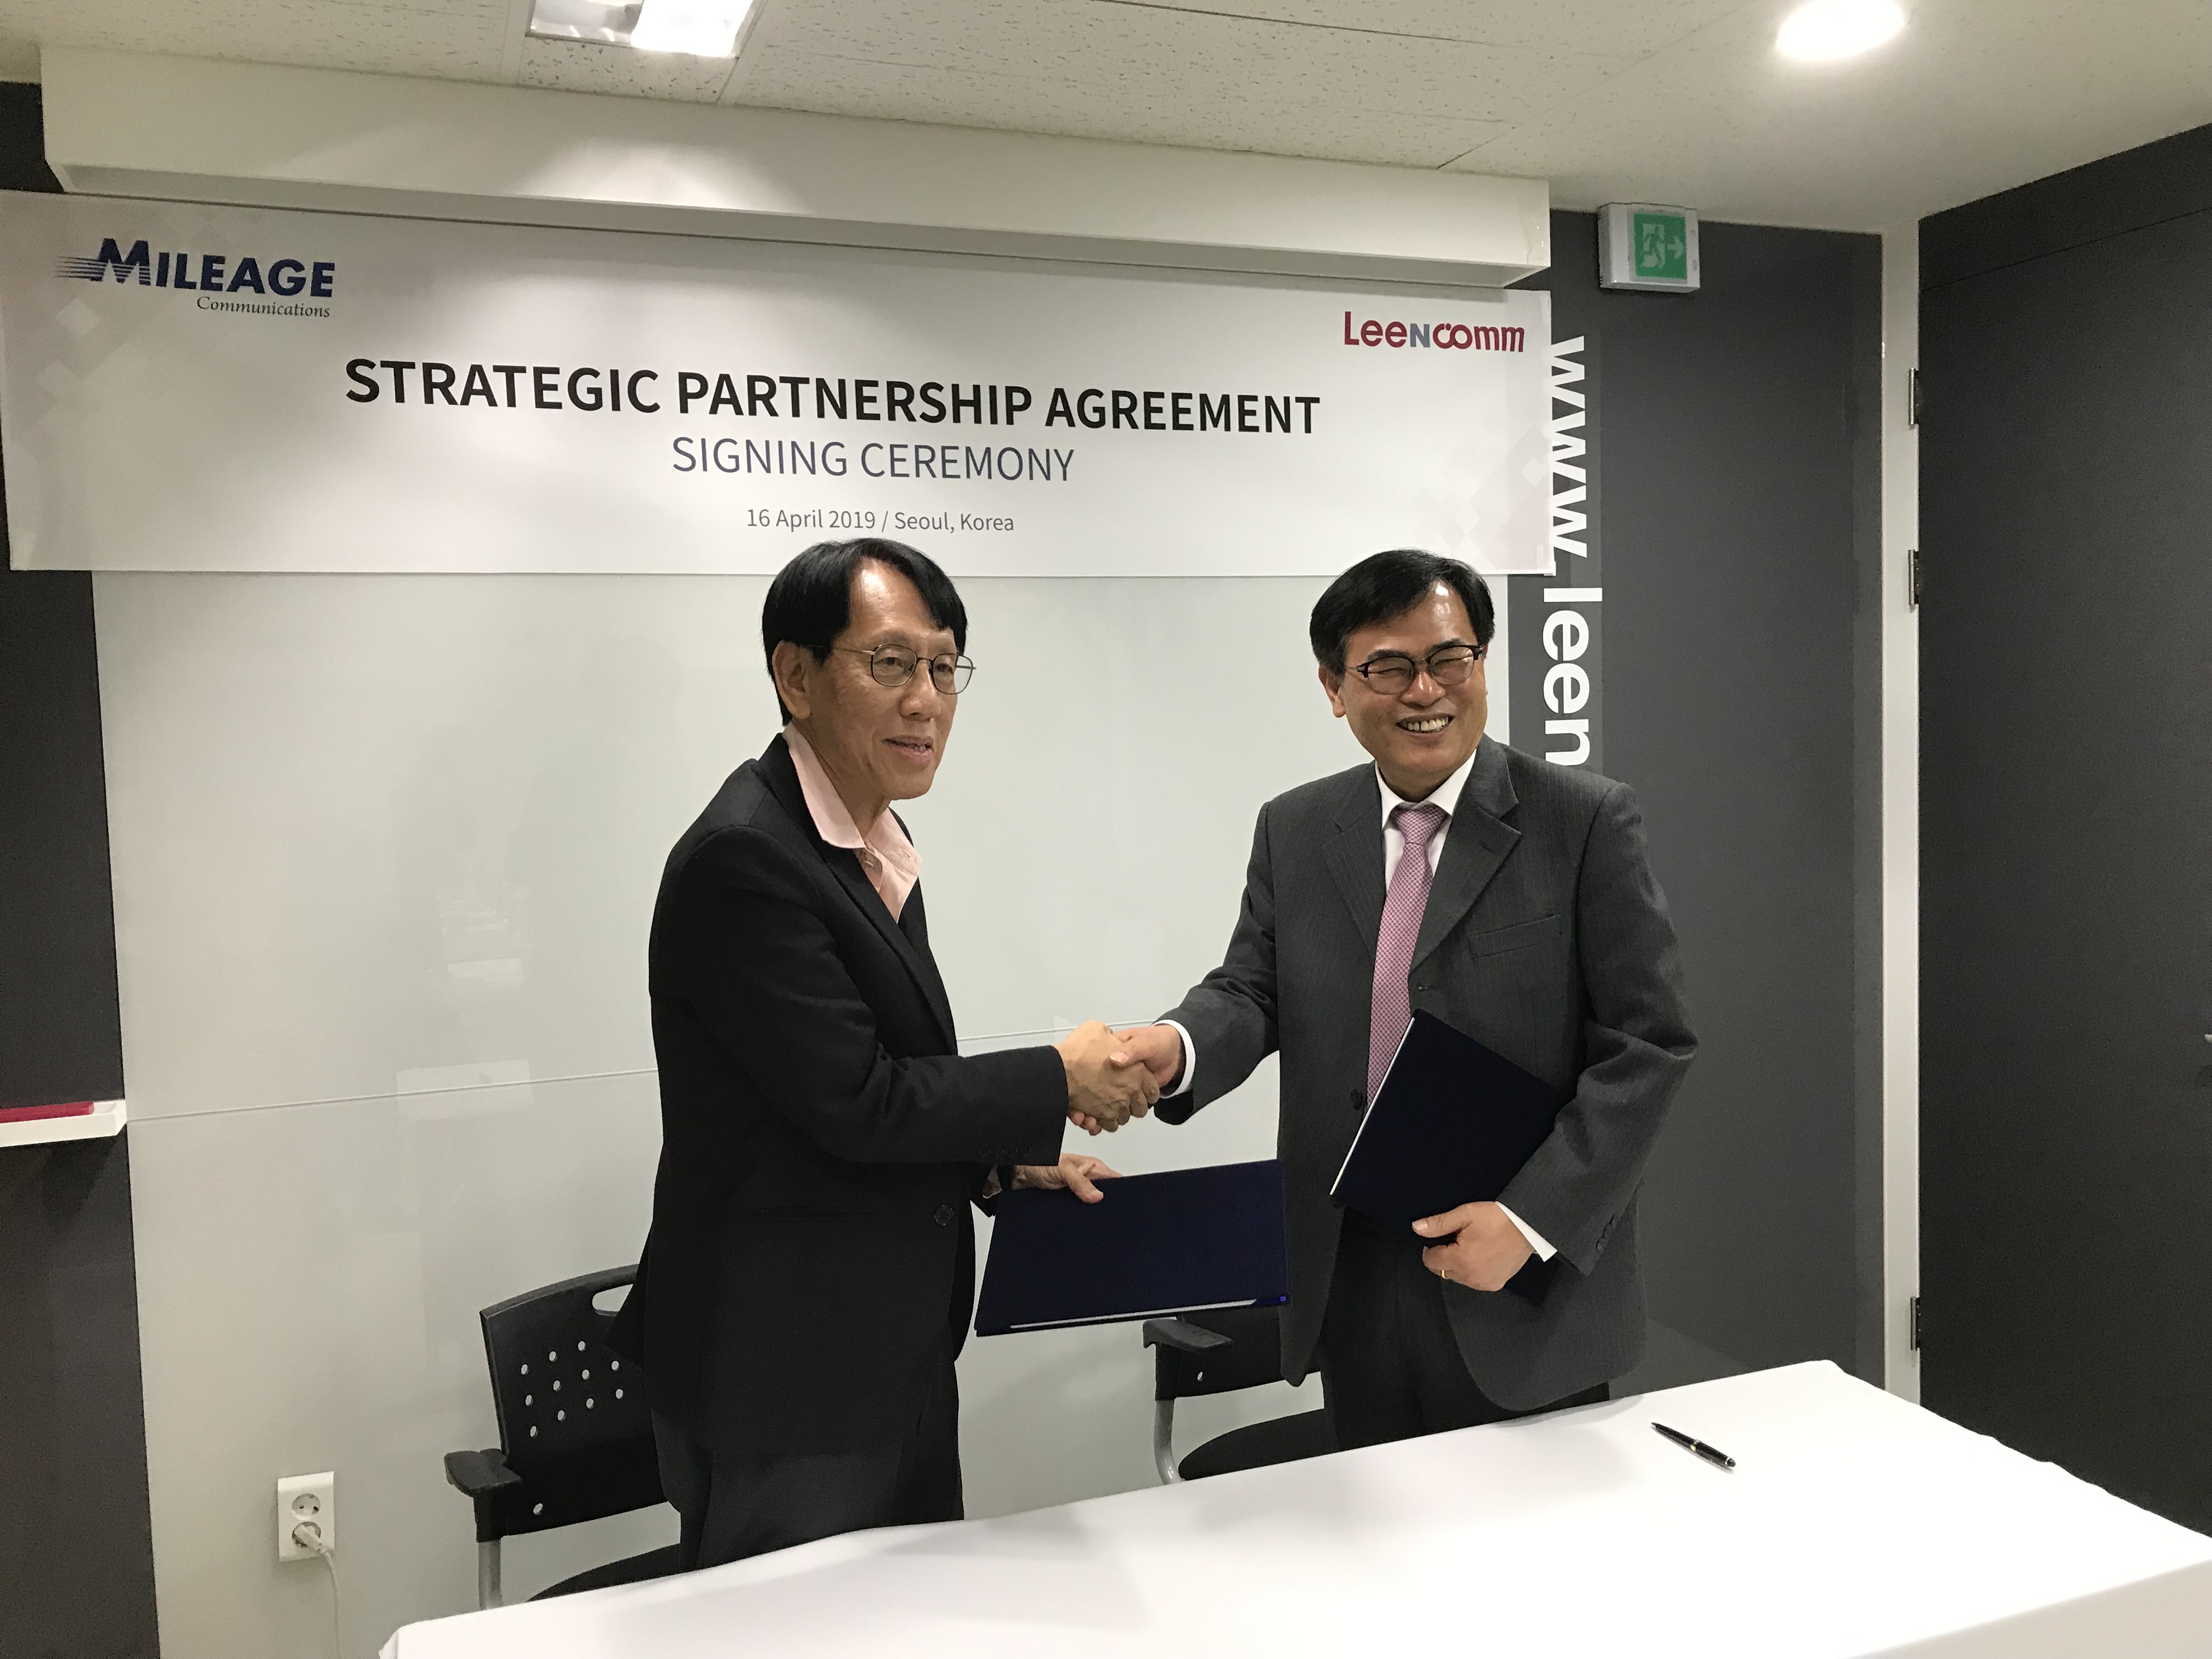 Mileage Communications signed strategic partnership with LeeNcomm in Korea